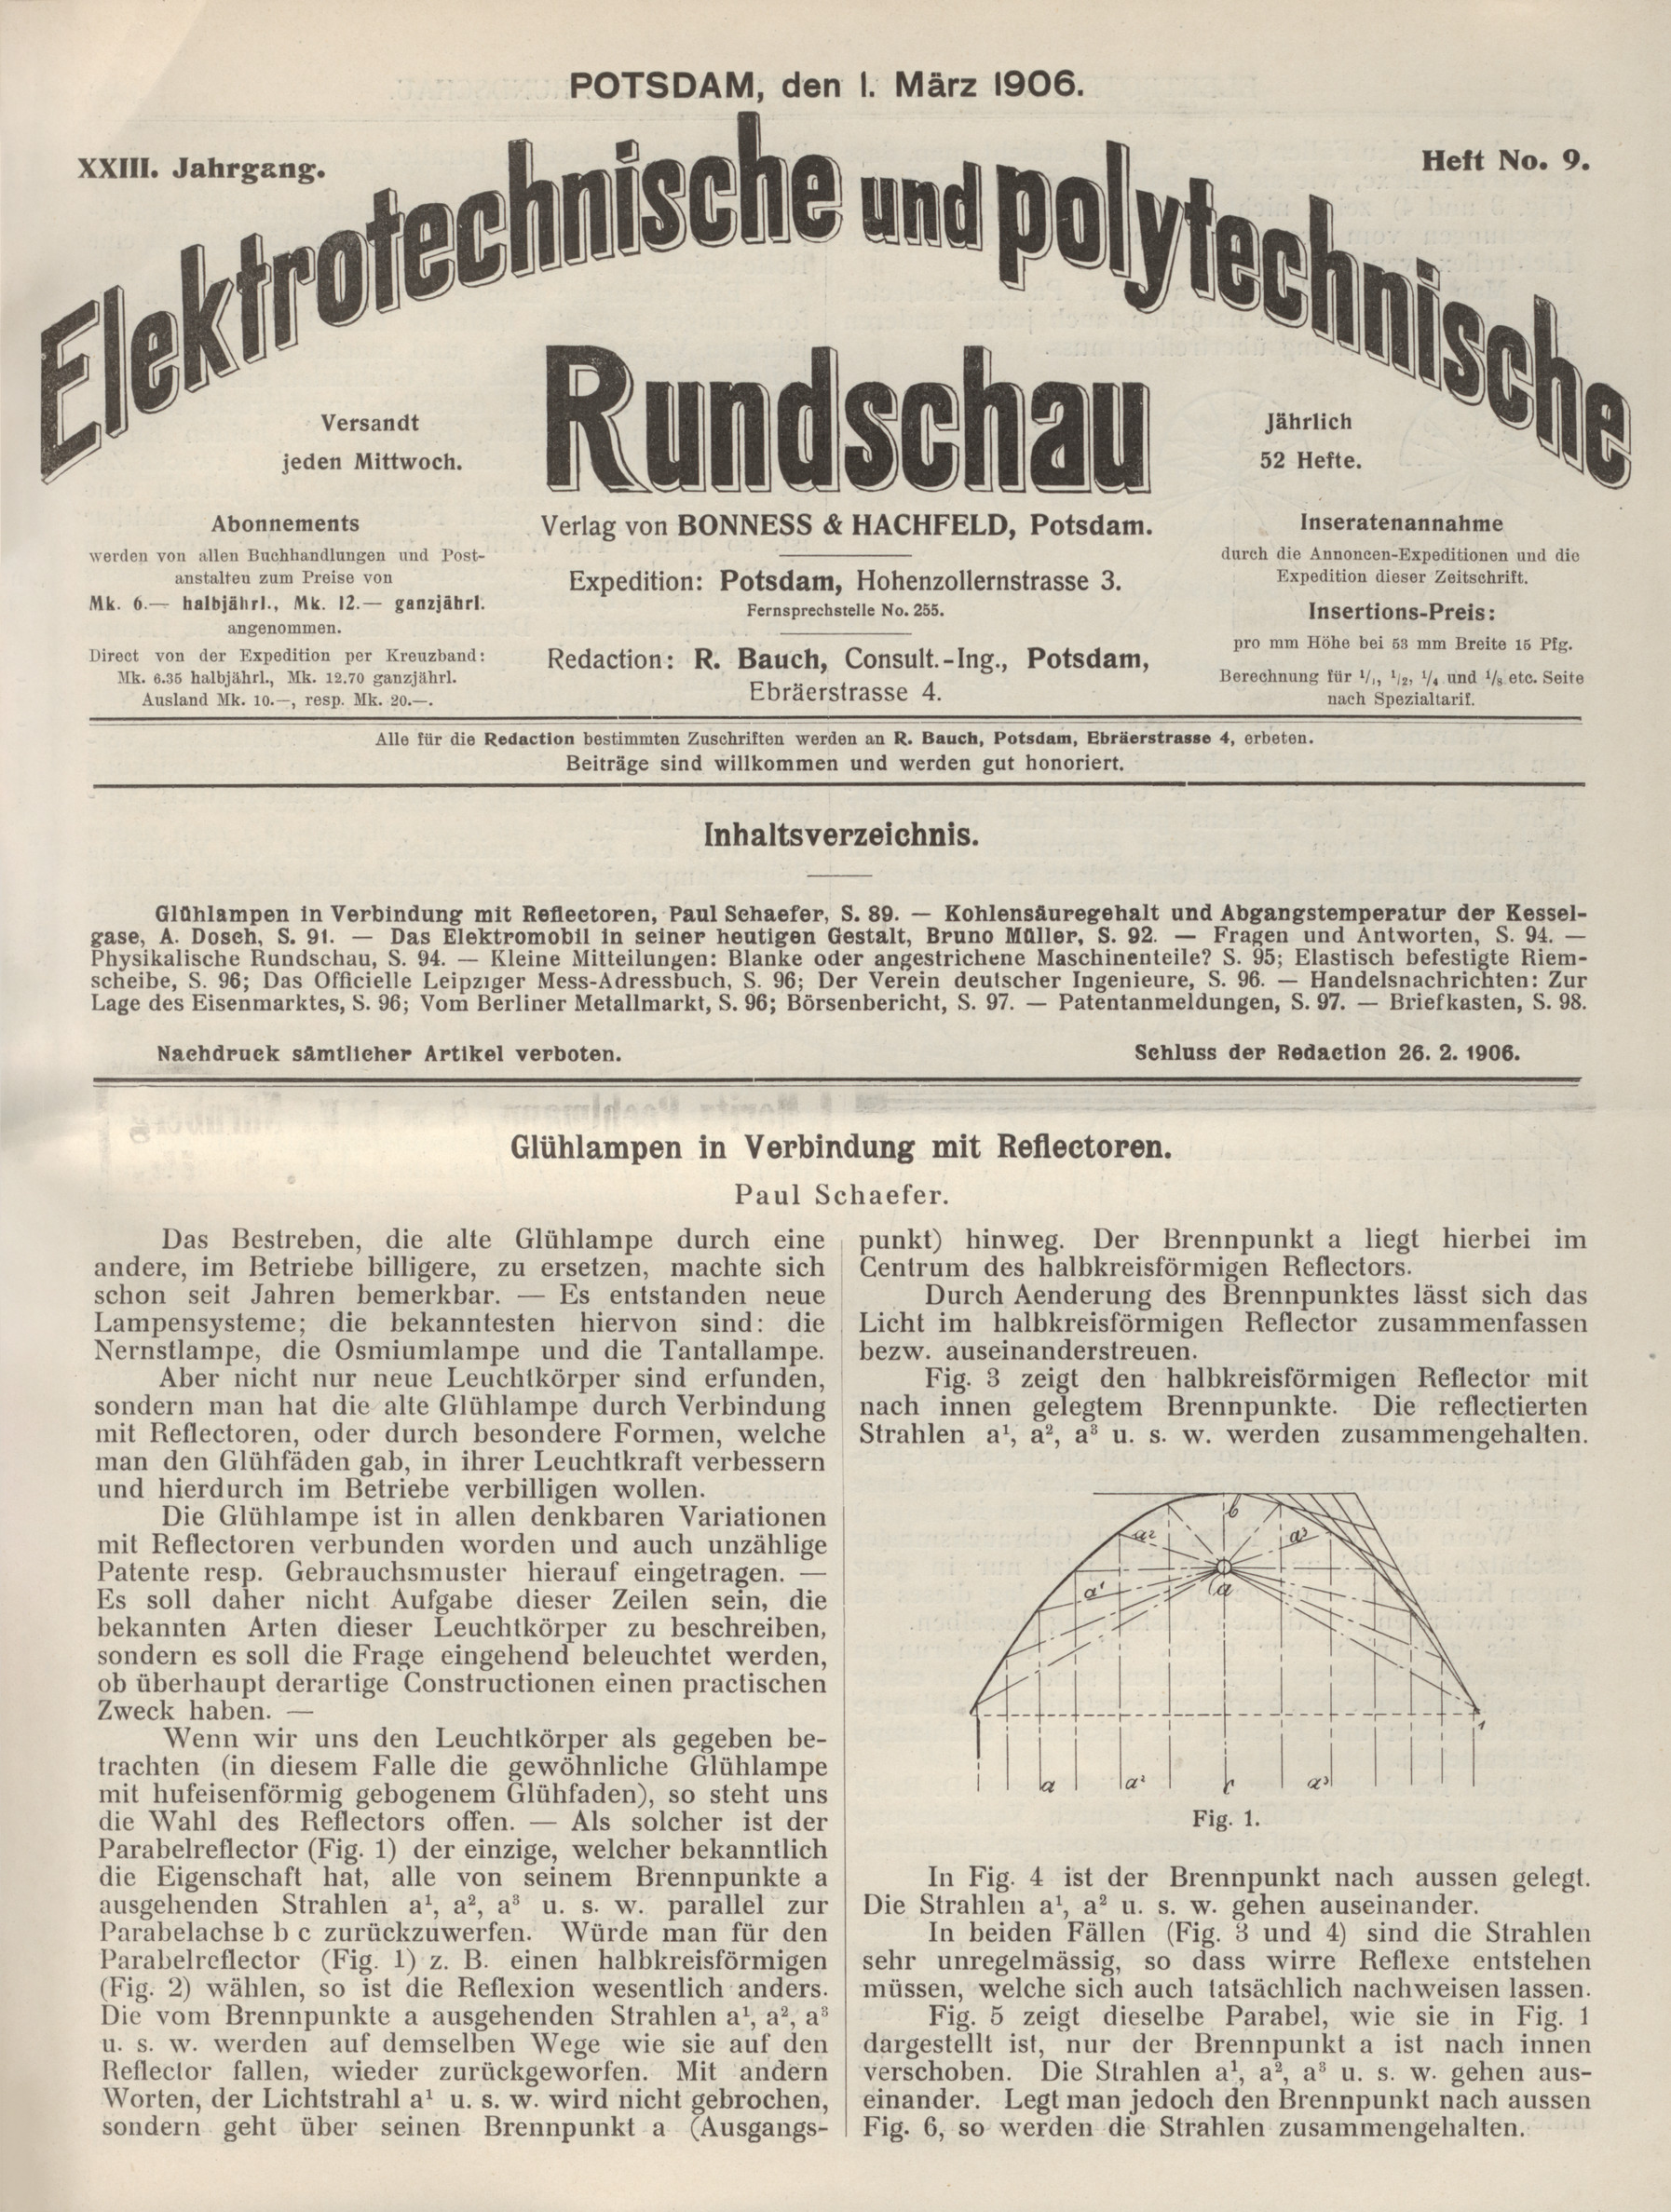 Elektrotechnische und polytechnische Rundschau, XXIII. Jahrgang, Heft No. 9